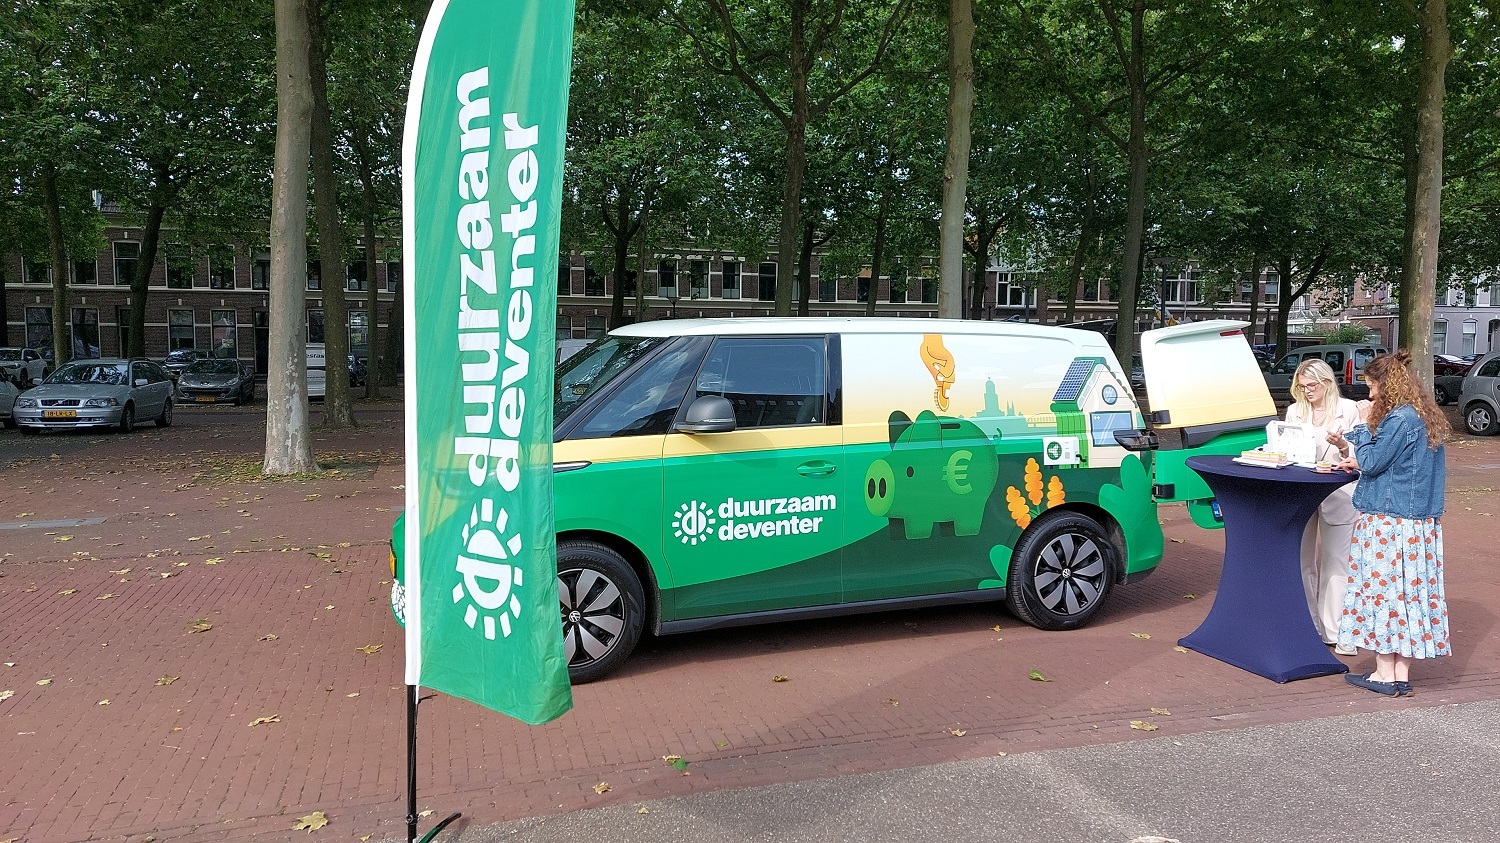 De Duurzaam Deventer Buzz is een groene, elektrische bus. Hiermee heeft de gemeente Deventer nu een mobiel informatiepunt rond duurzaamheid heeft.